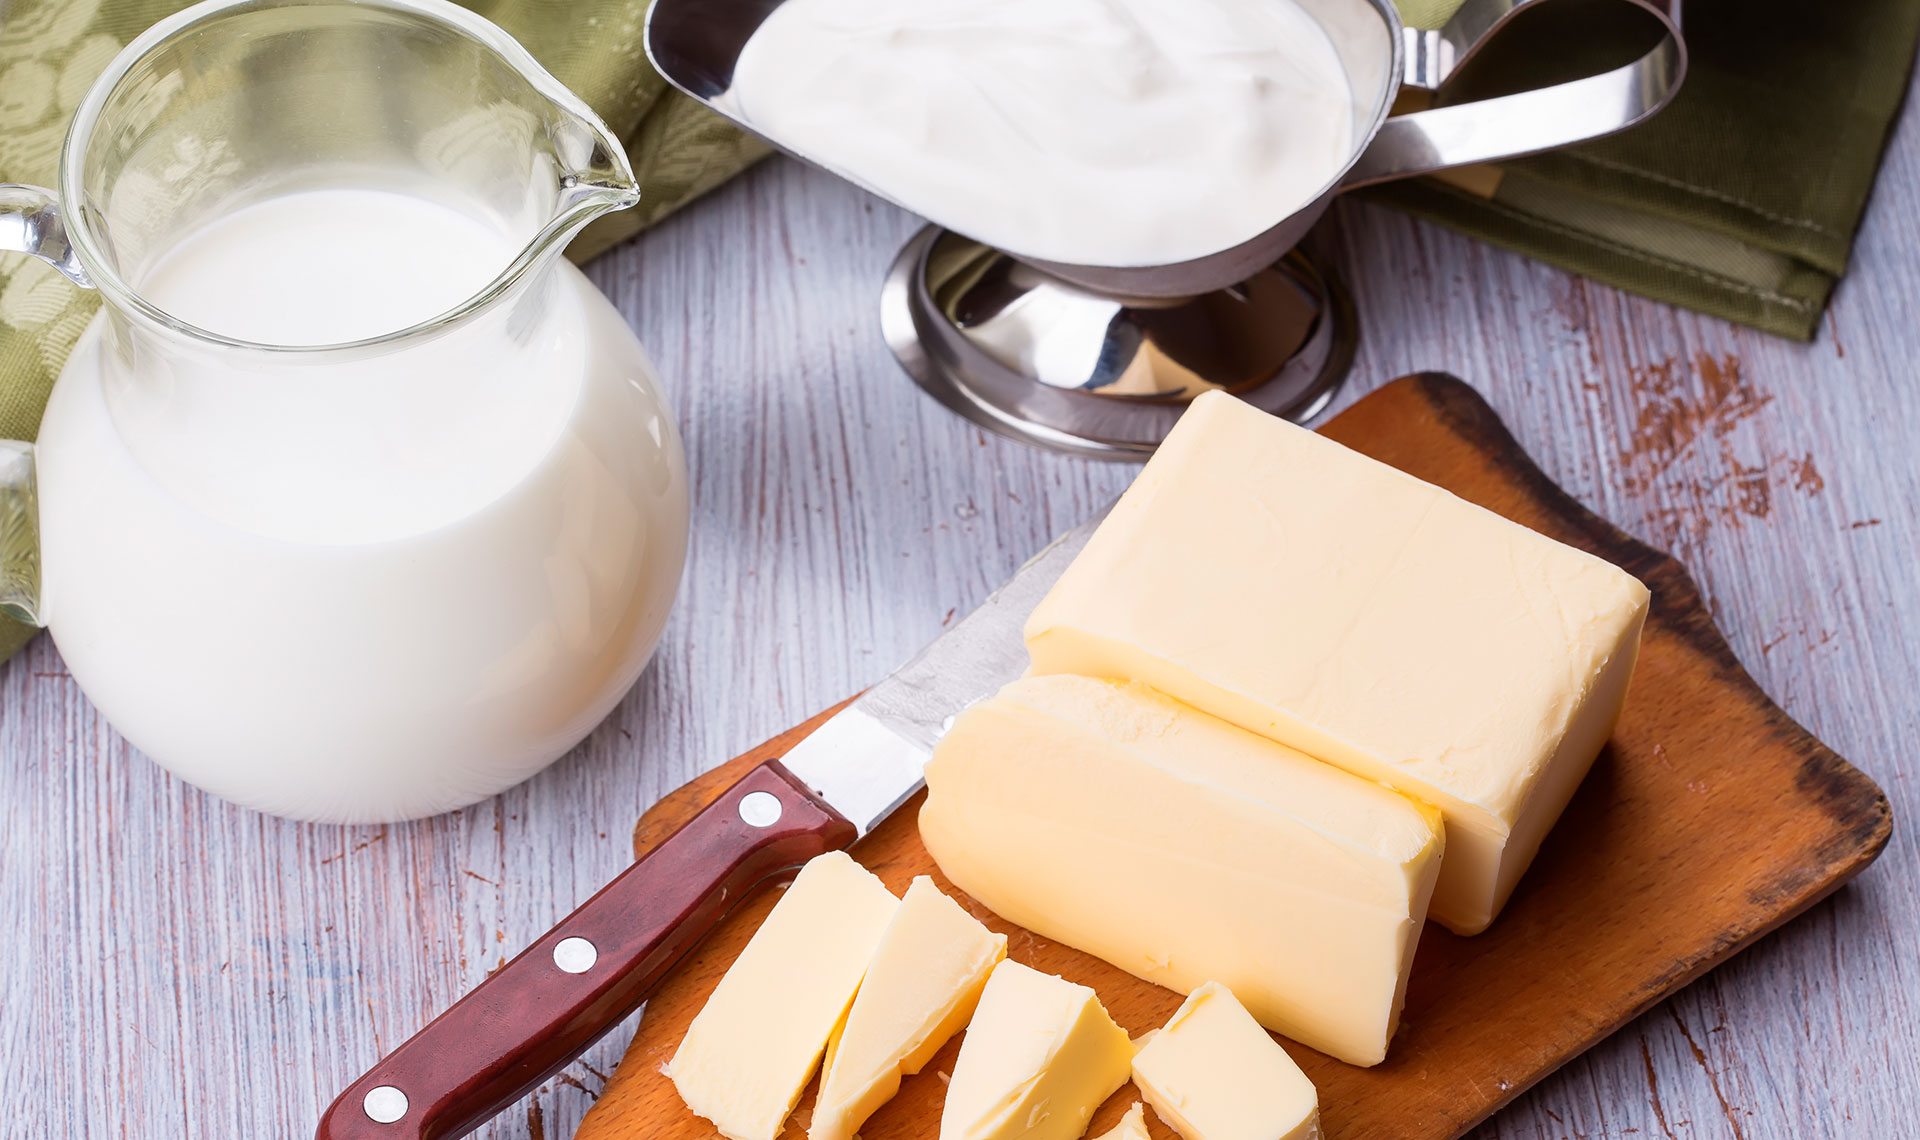 Manteiga ou margarina: qual a diferença e impacto nas receitas?